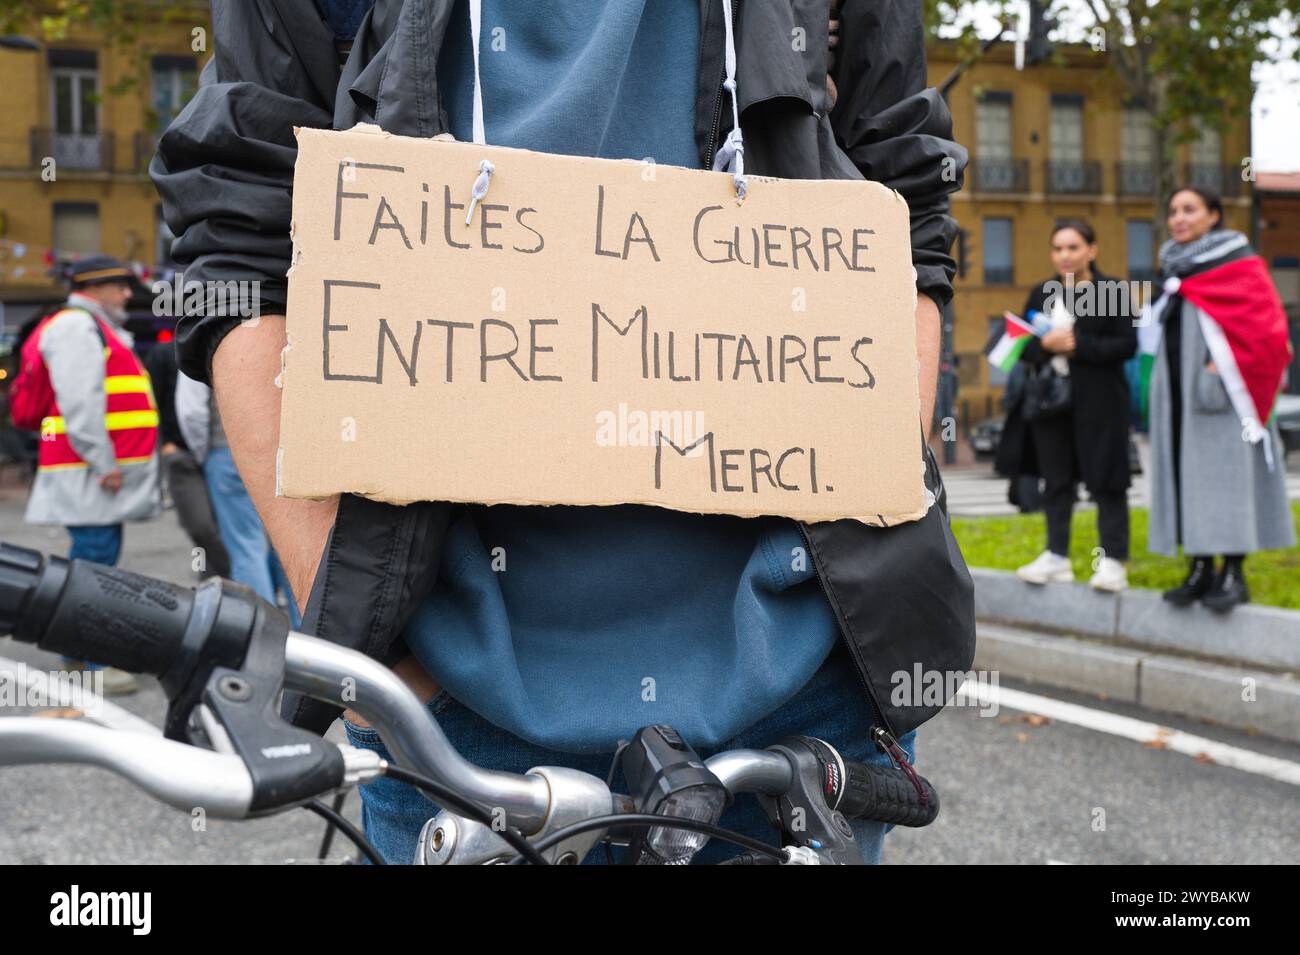 Un cycliste manifestant avec une pancarte, faire la guerre entre les militaires, Merci, avec de chaque côté un démonstrateur avec un drapeau CGT. Banque D'Images